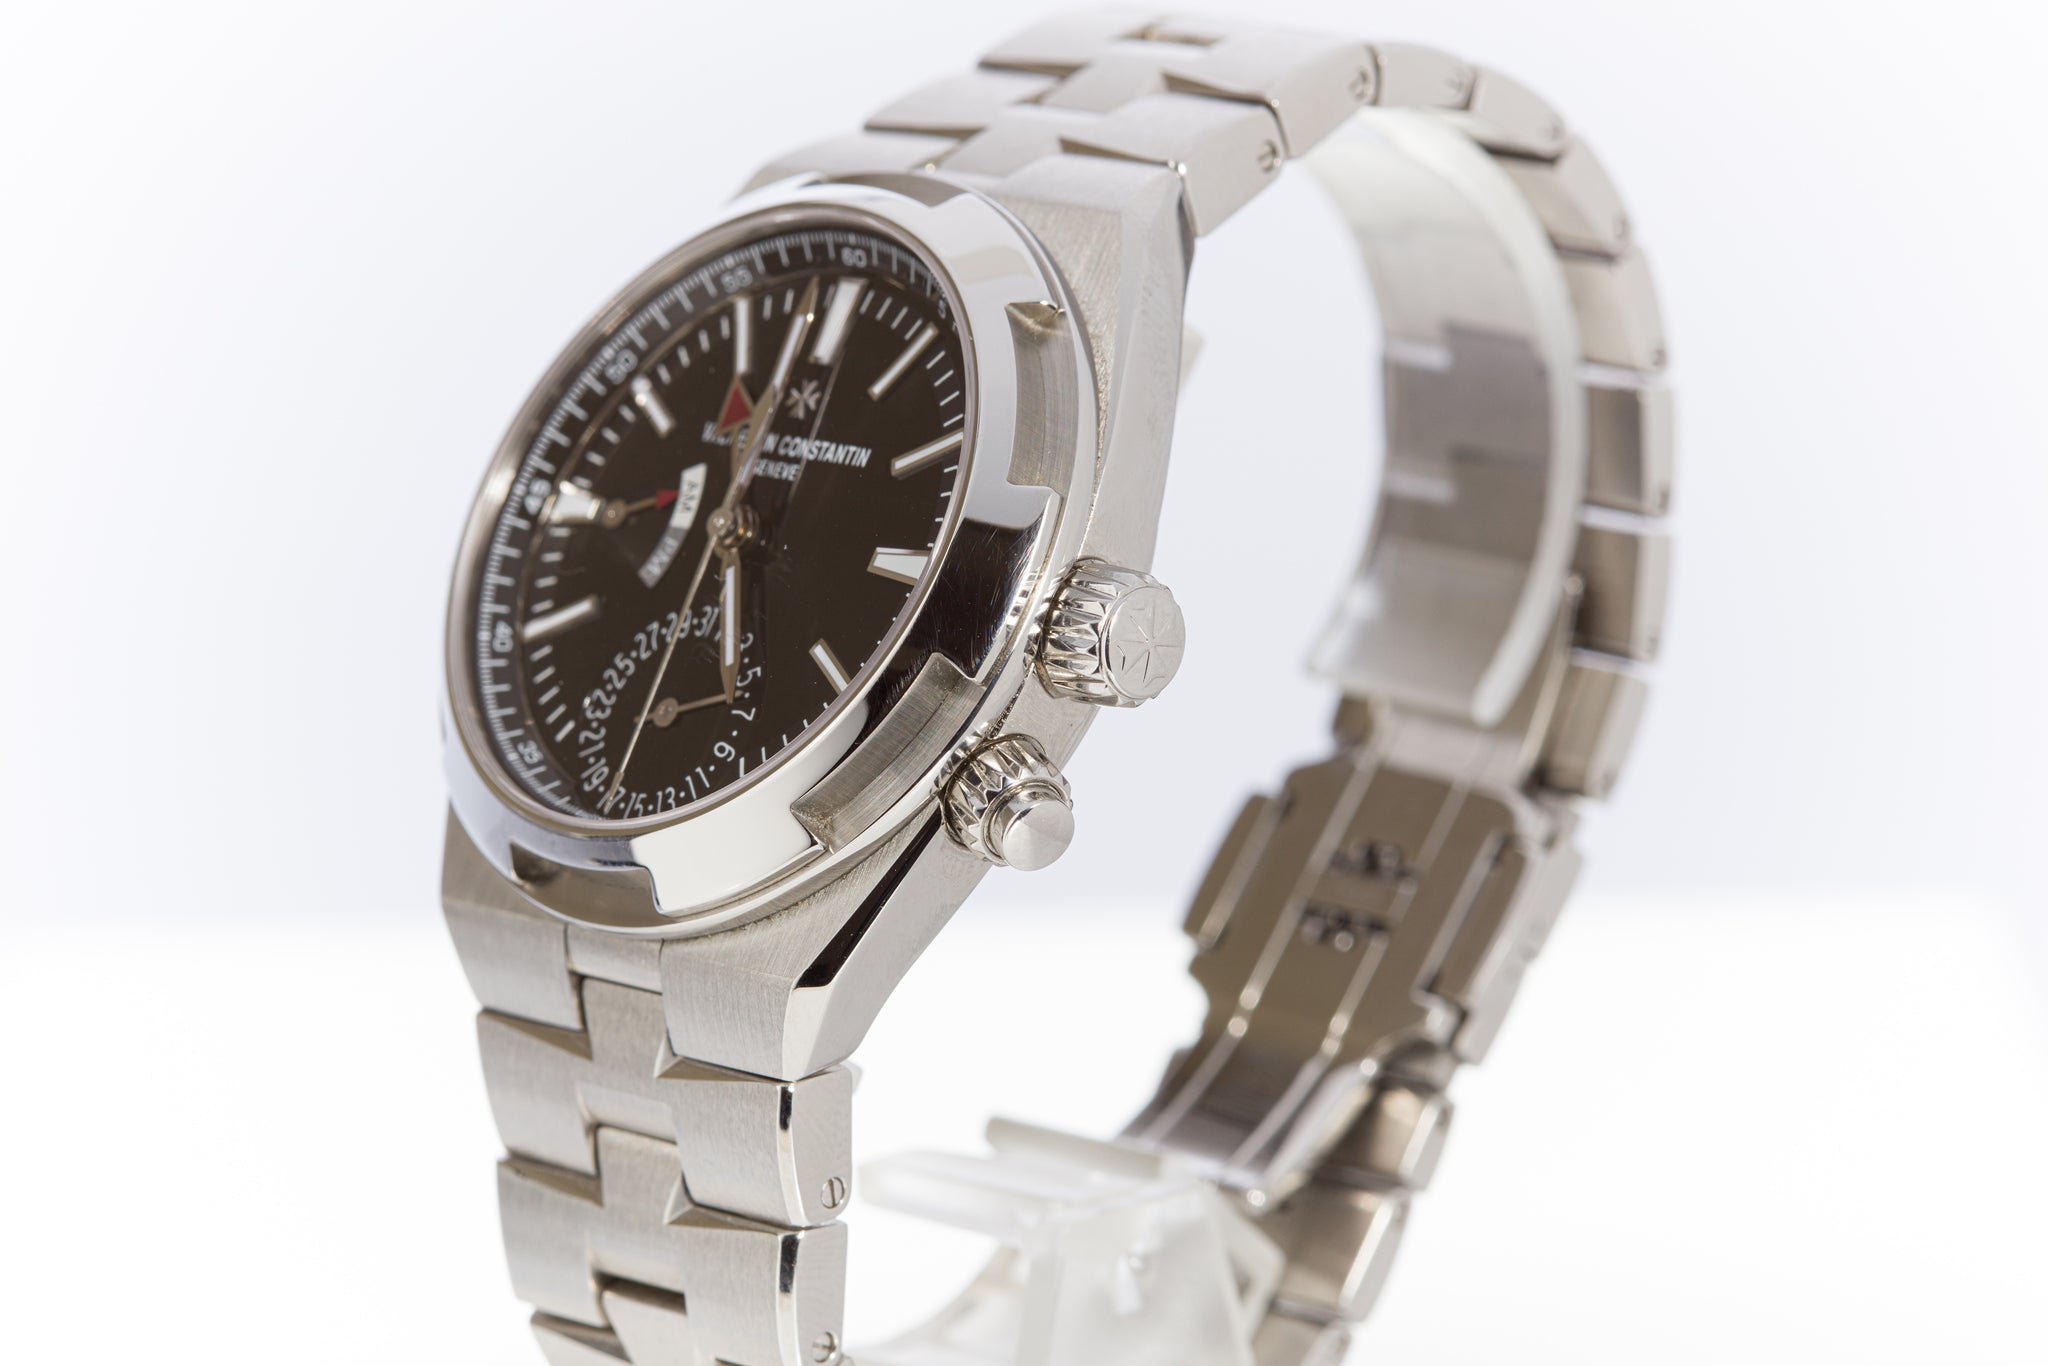 Vacheron Constantin Overseas Blue Dial Watches: Dual Time 7900V